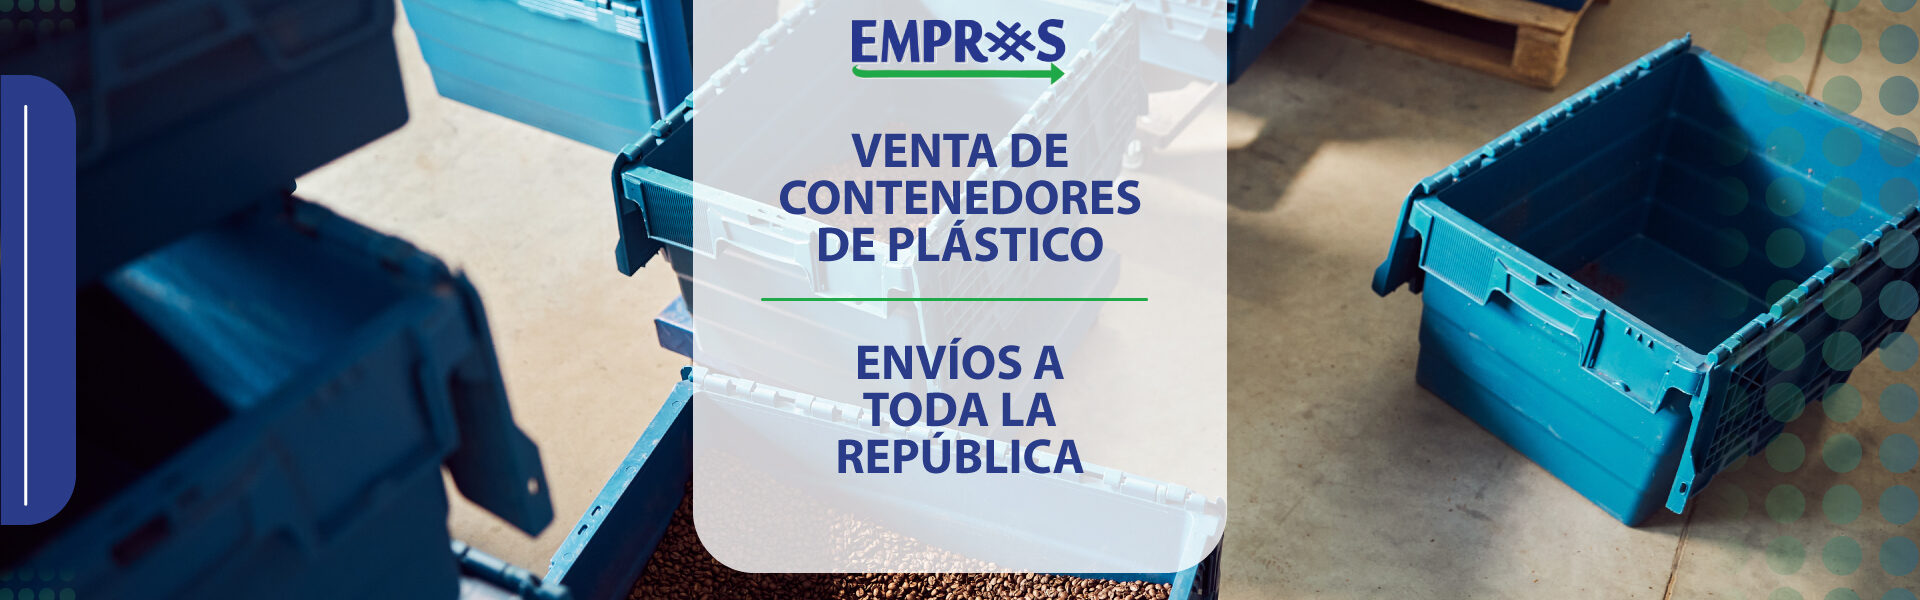 Venta de contenedores de plástico en Querétaro